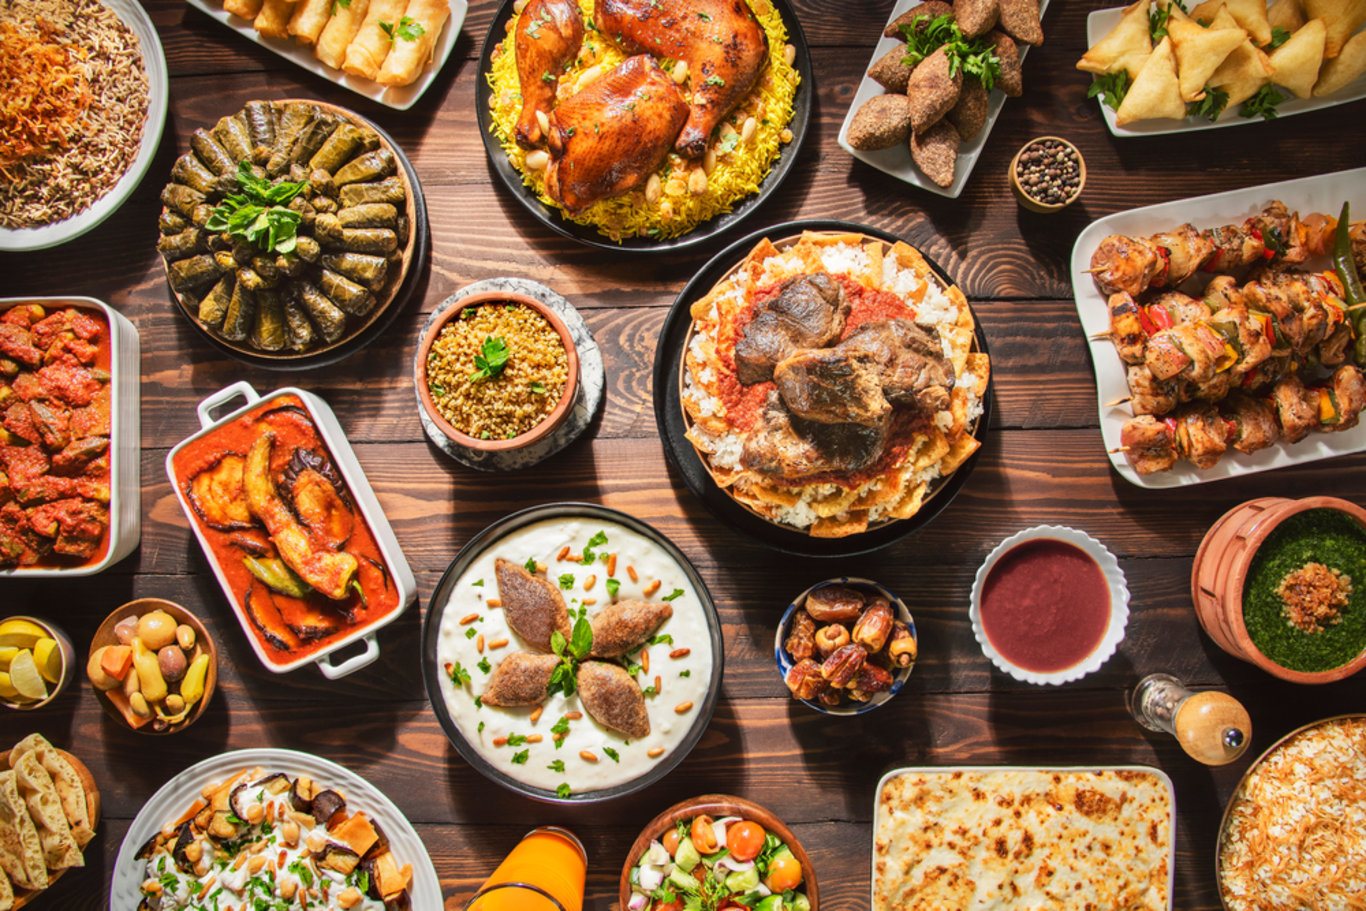 Oruç tutarken kilo vermek mümkün! 'Ramazan'da nasıl kilo verilir?' diyenlere 14 sağlıklı öneri